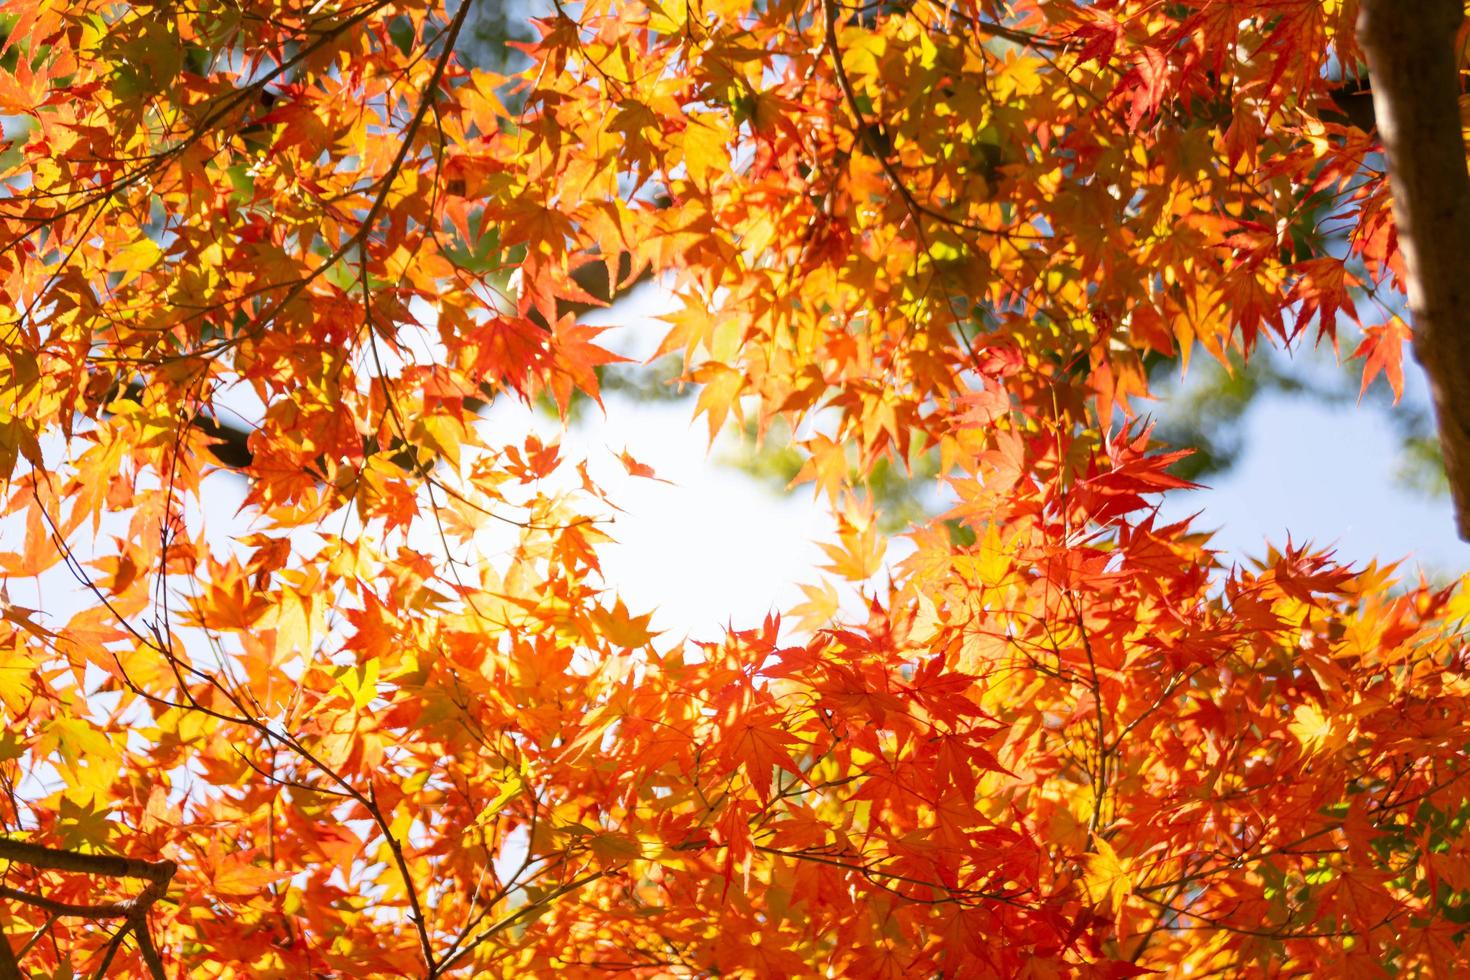 primer plano de las hojas del árbol de arce durante el otoño con cambio de color en la hoja en amarillo anaranjado y rojo, caída de la textura de fondo natural concepto de otoño foto